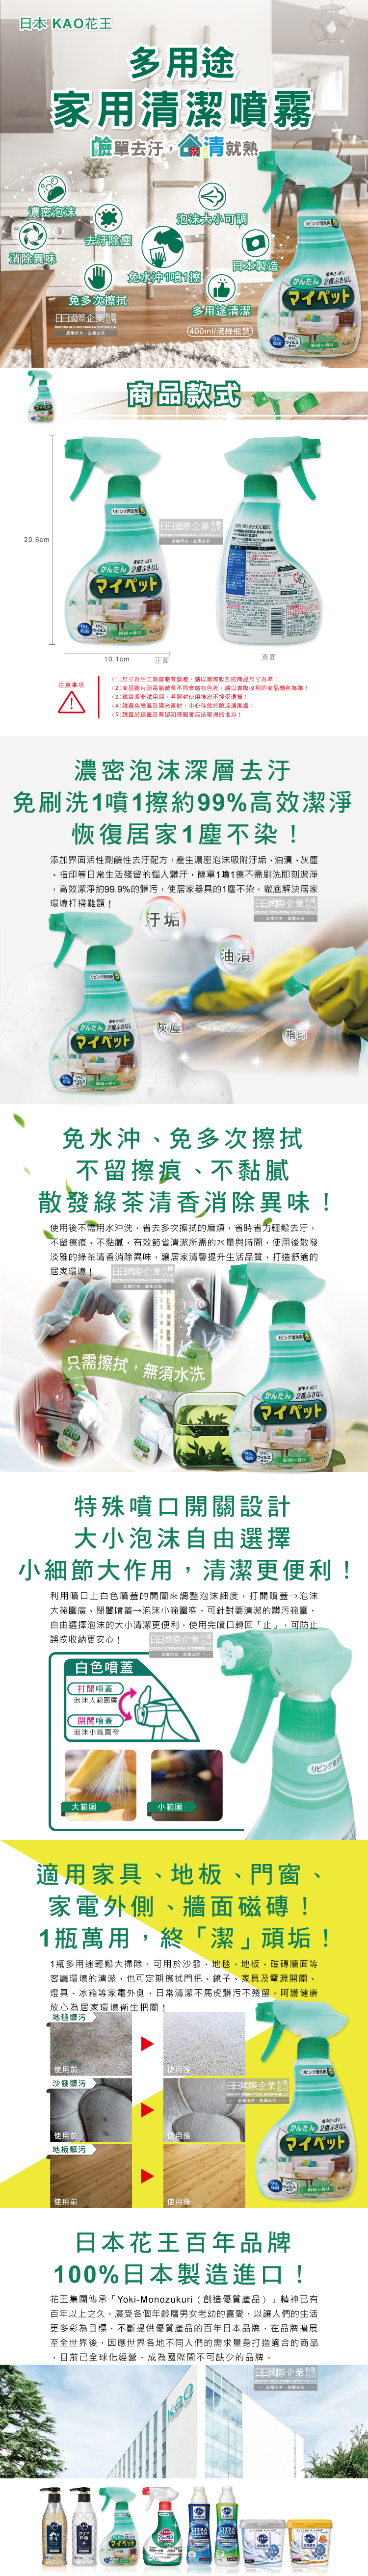 日本KAO花王-多用途家用清潔噴霧400ml淺綠瓶裝介紹圖